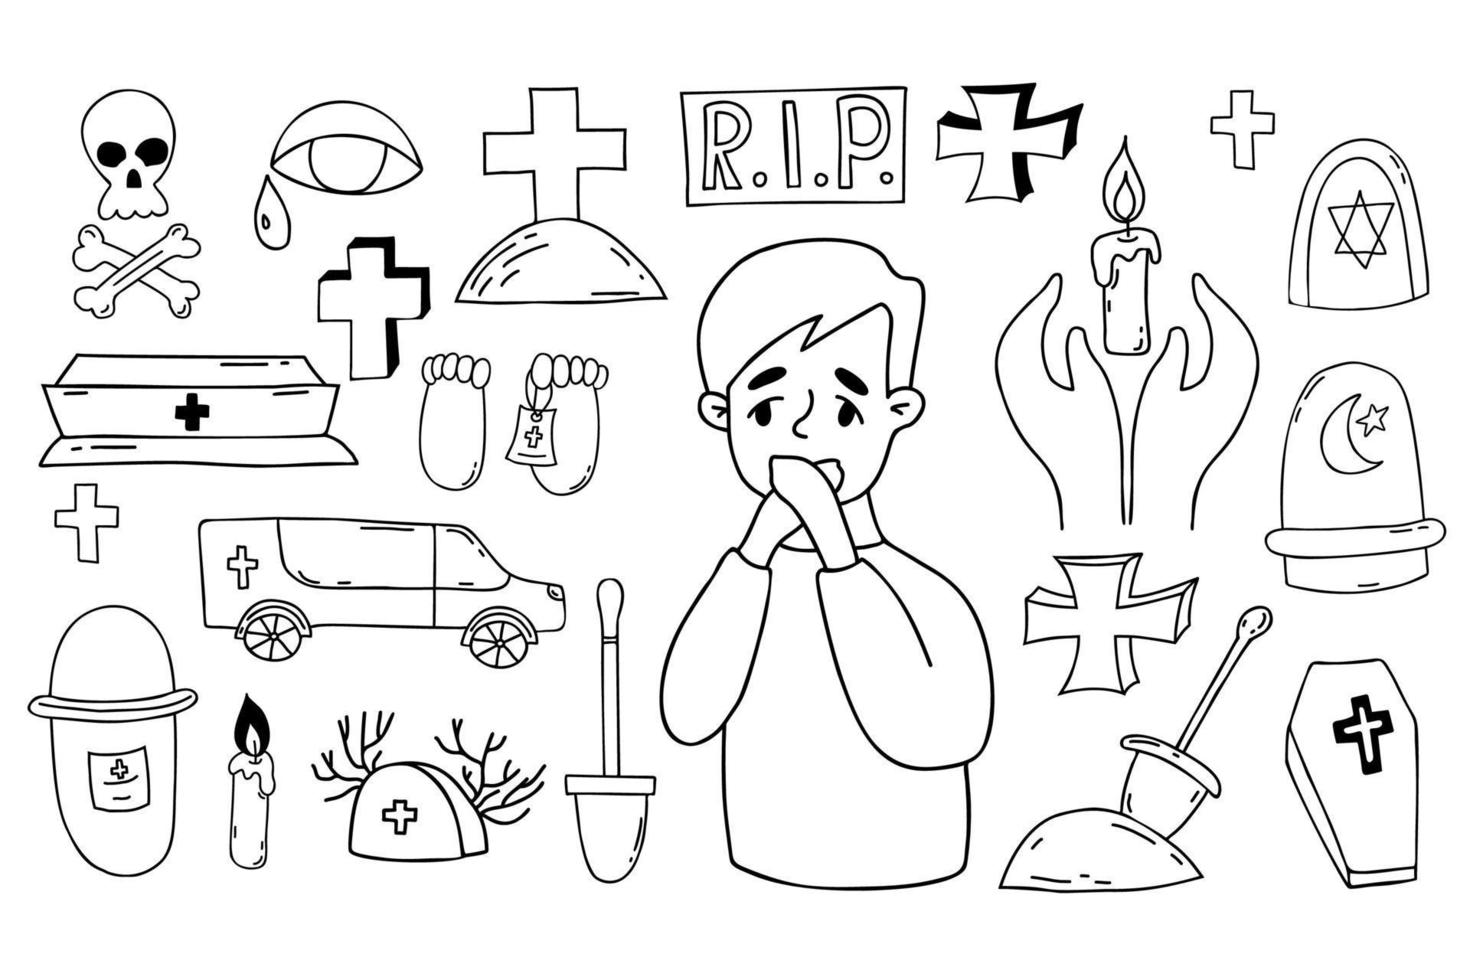 samling av död doodles. förtvivlad pojke. begravning symboler - grav, korsa, kyrkogård, Kista och likvagn, skalle och korsade ben, damm och ljus. isolerat vektor översikt ritningar.